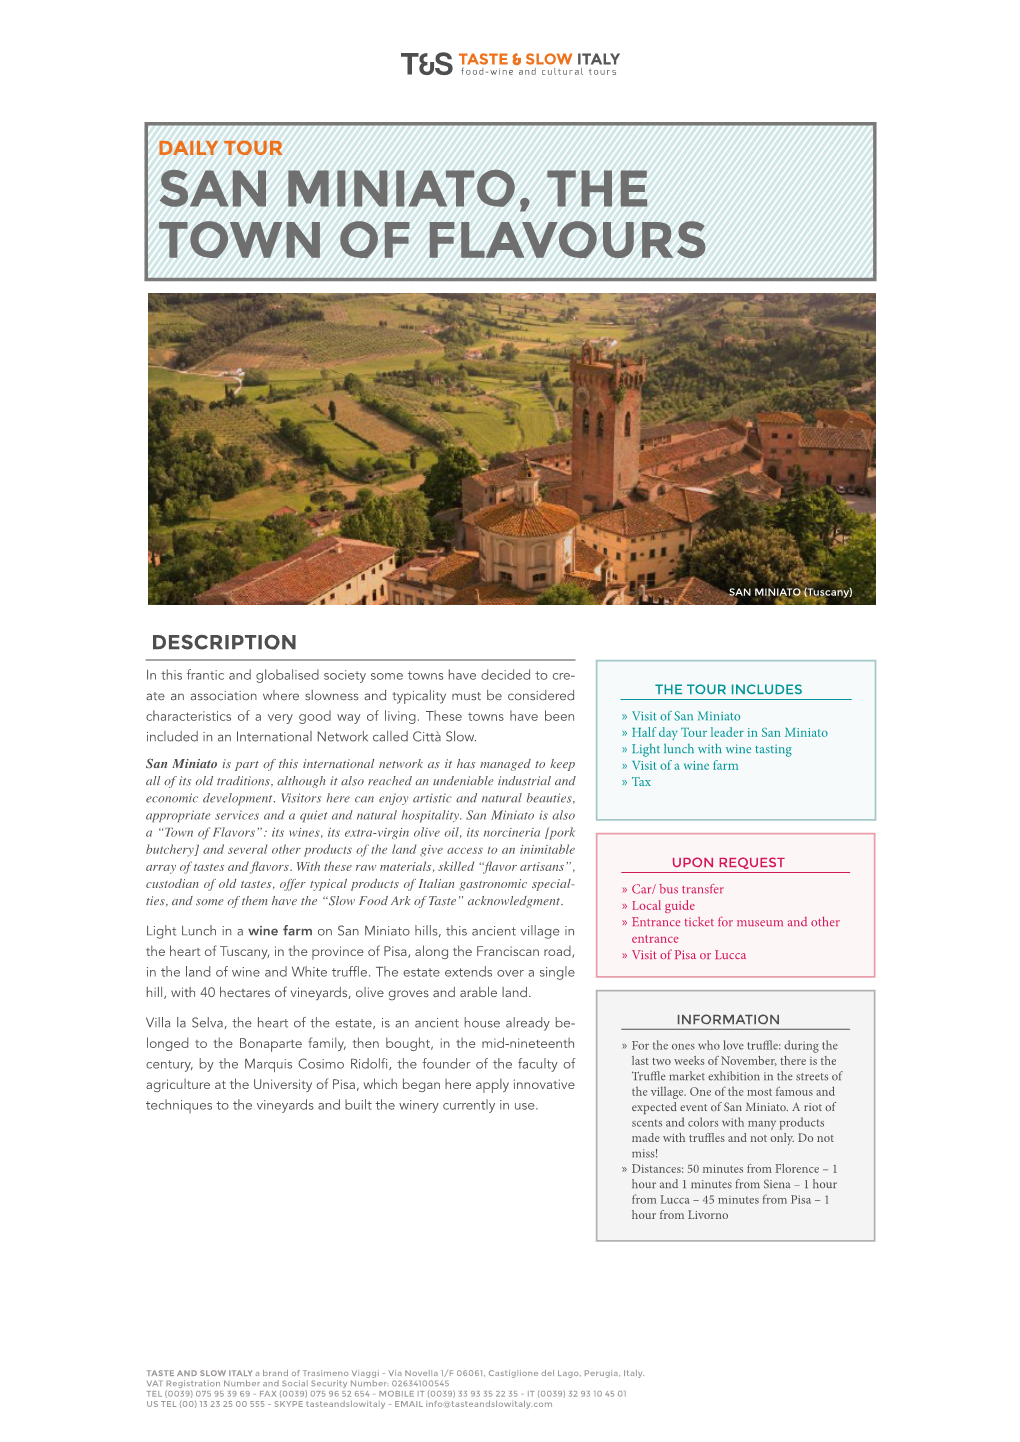 San Miniato, the Town of Flavours